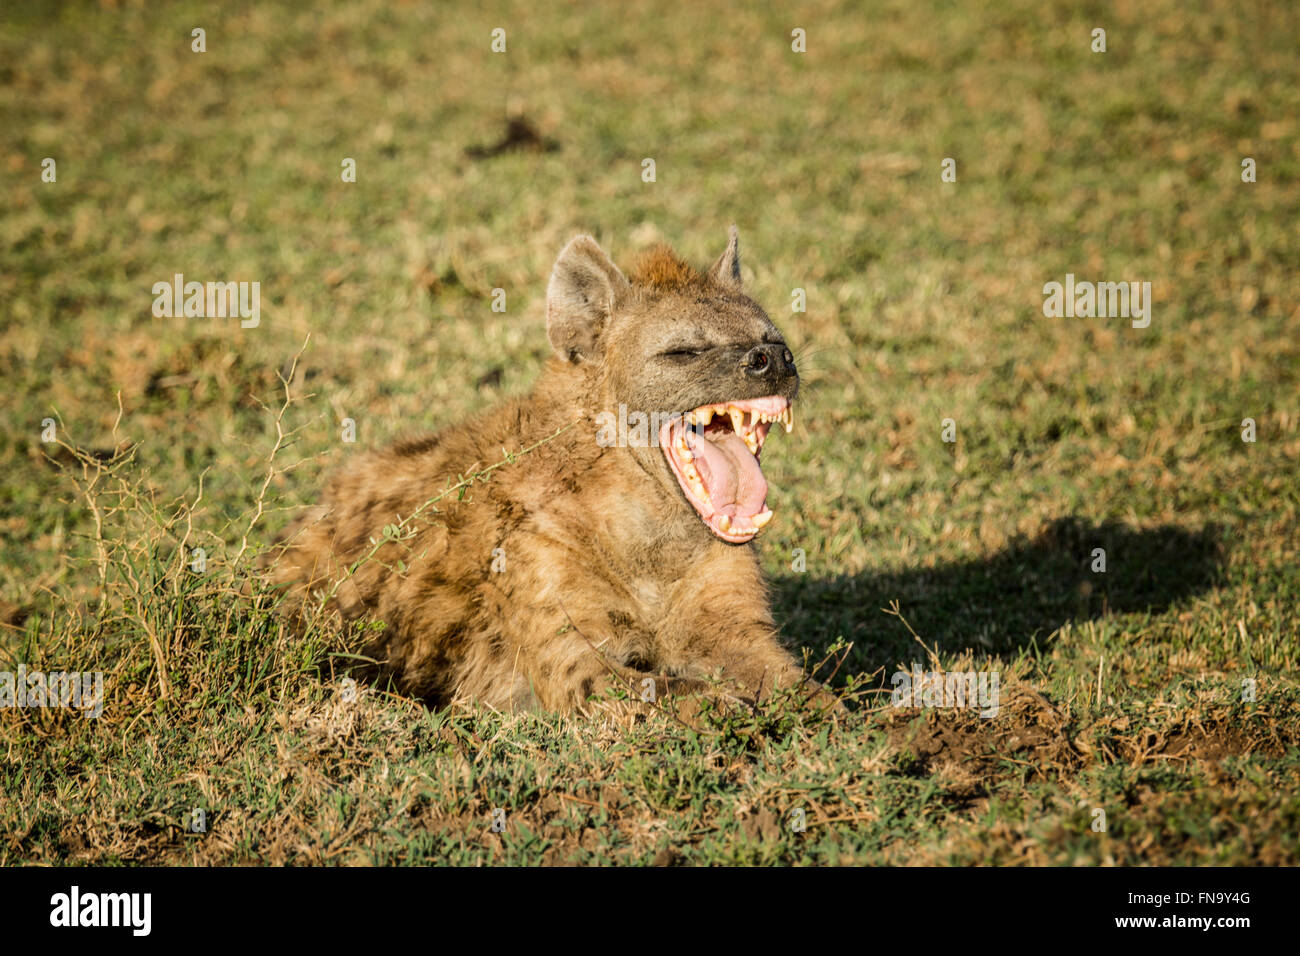 Beschmutzte Hyäne, zeigt Crocuta Crocuta, mit weit offenem Mund Gähnen seine Zähne, Masai Mara National Reserve, Kenia, Afrika Stockfoto